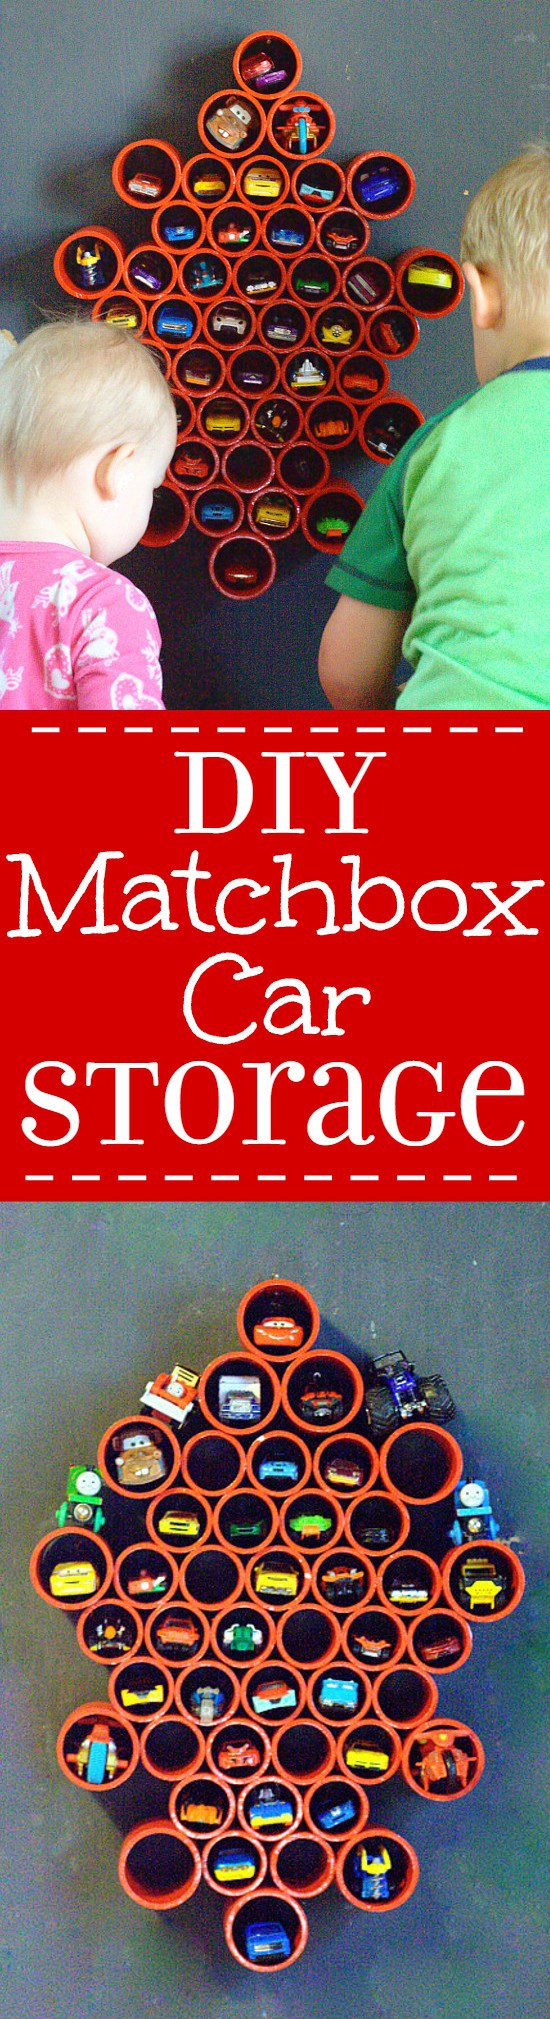 matchbox storage ideas